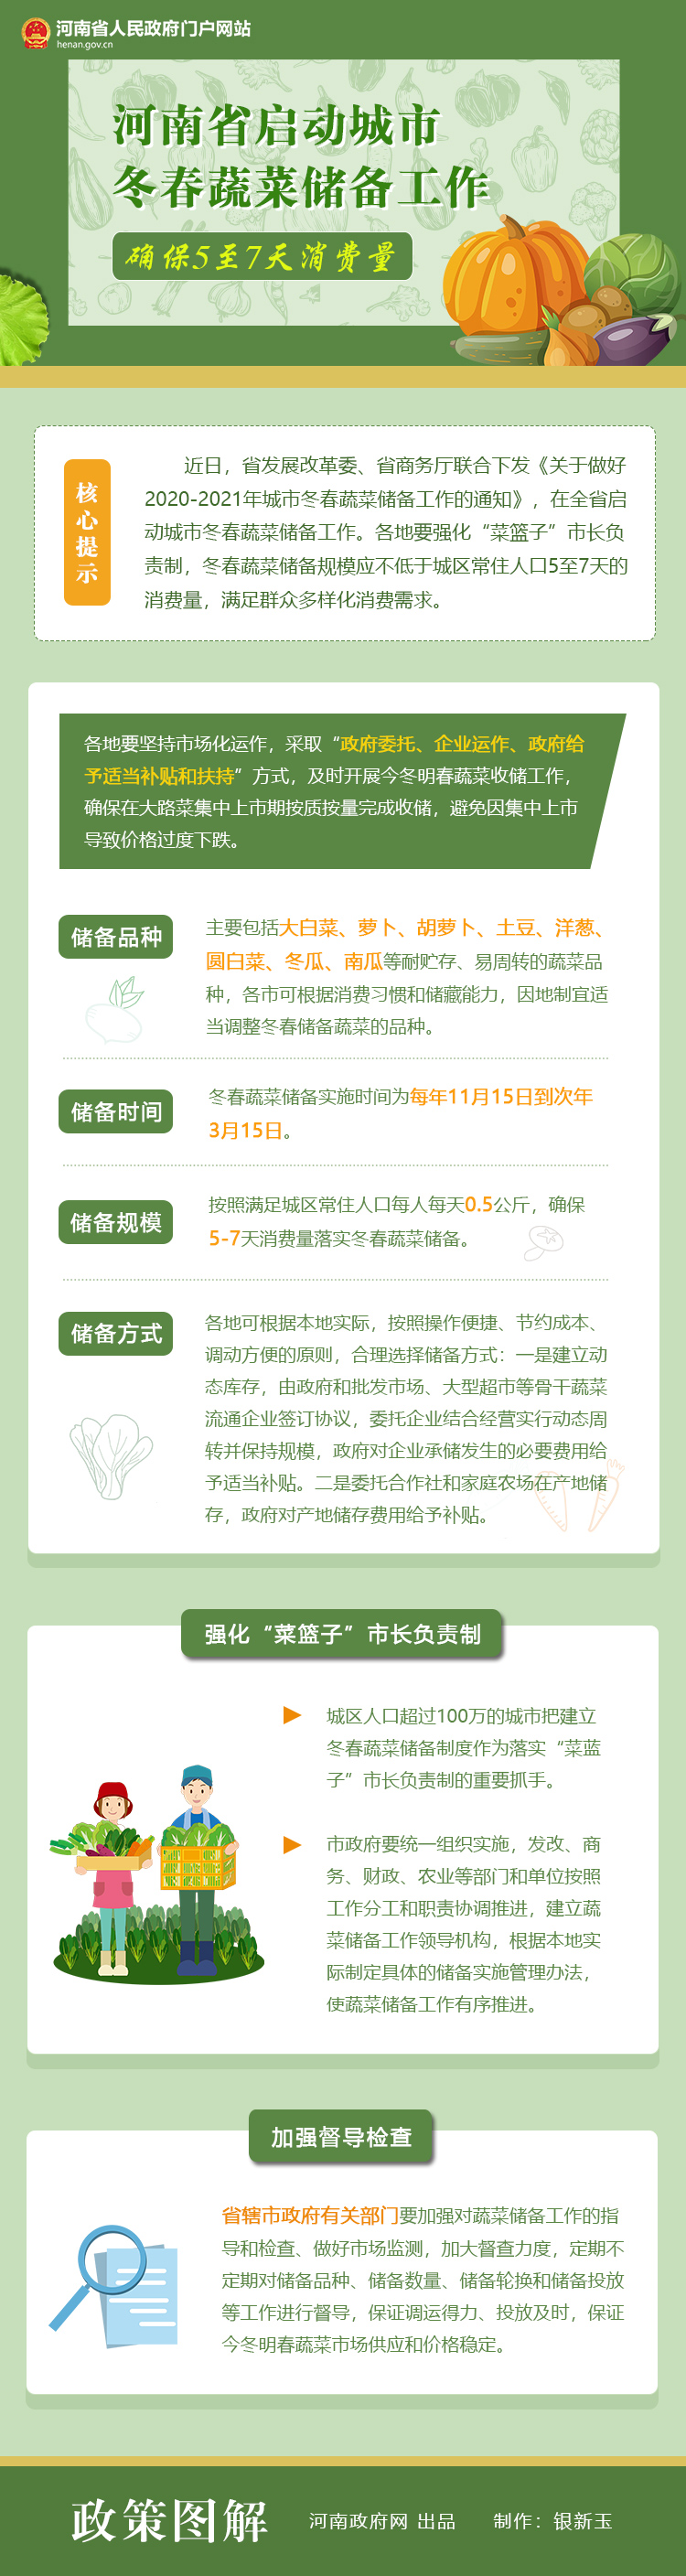 图解：河南省启动2020-2021年城市冬春蔬菜储备工作